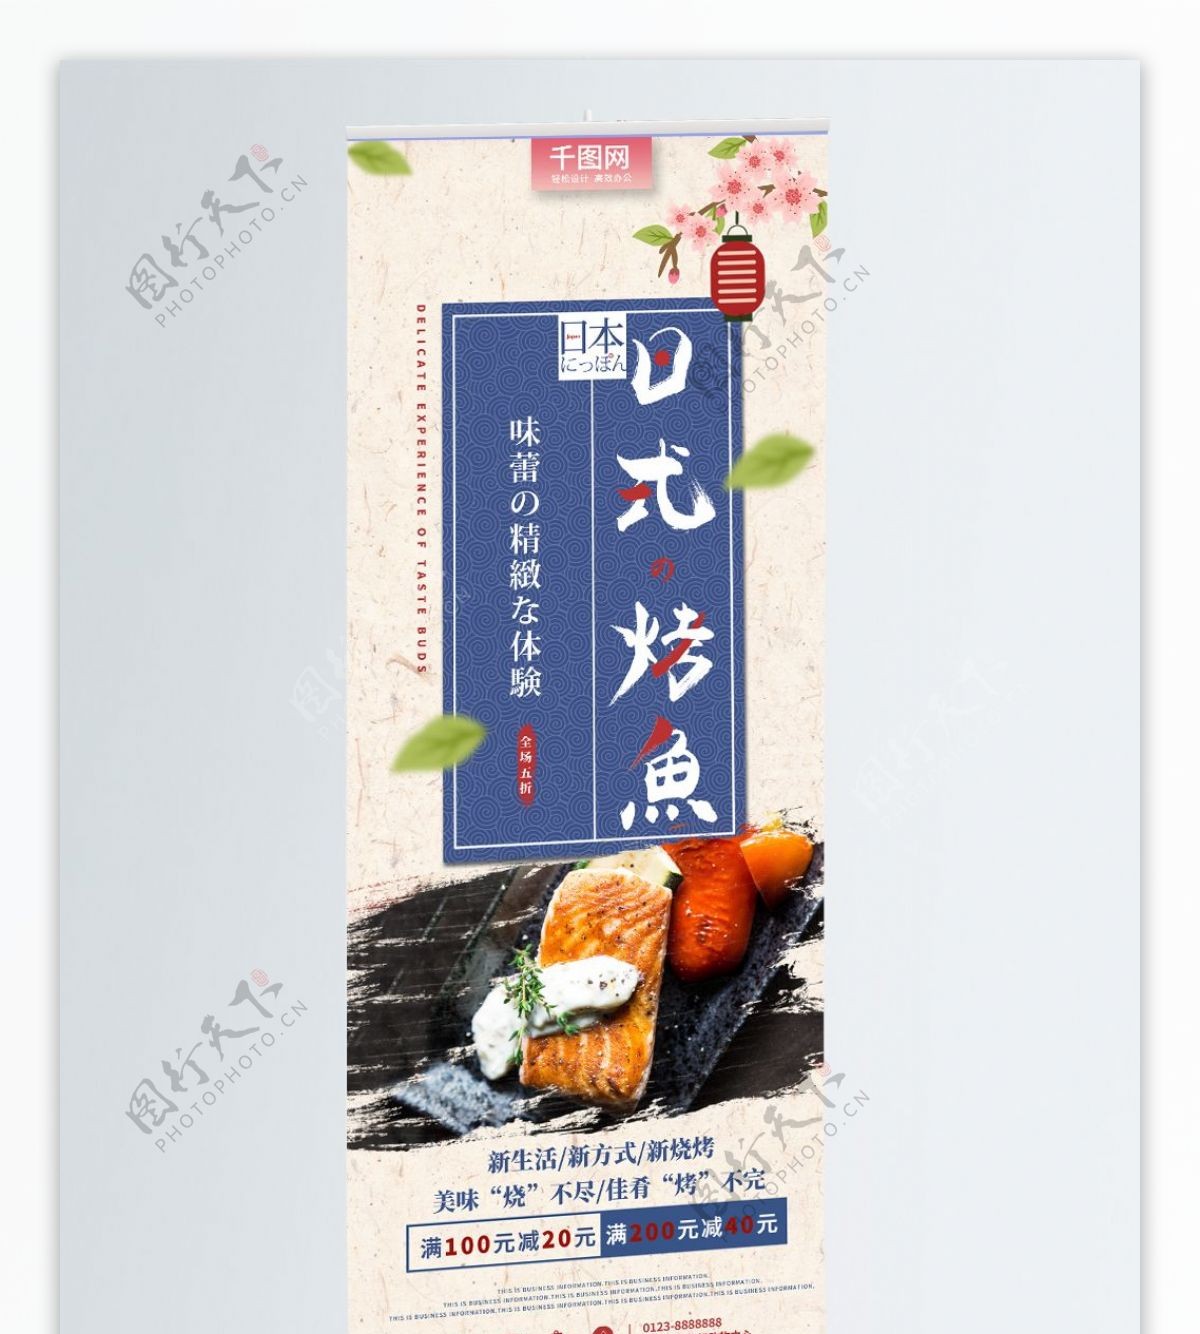 特色日式风格美味烤鱼促销活动宣传易拉宝